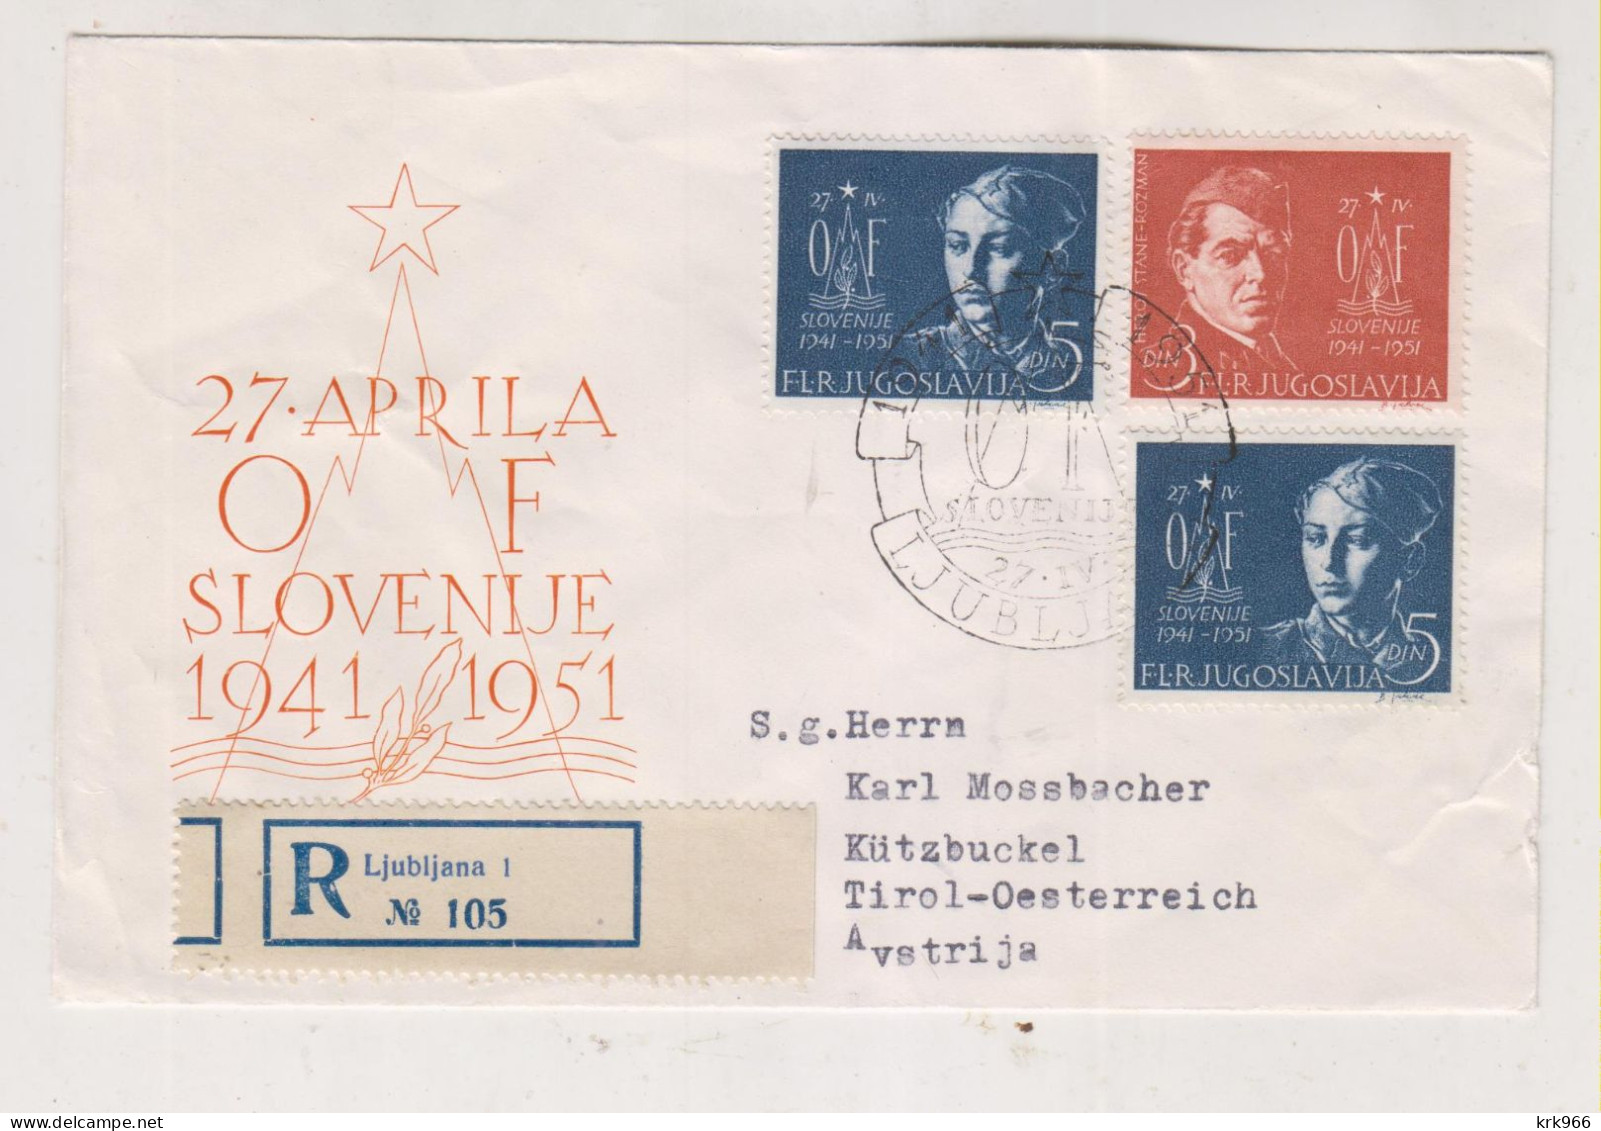 YUGOSLAVIA,1951 LJUBLJANA Nice Registered Cover To Austria - Storia Postale